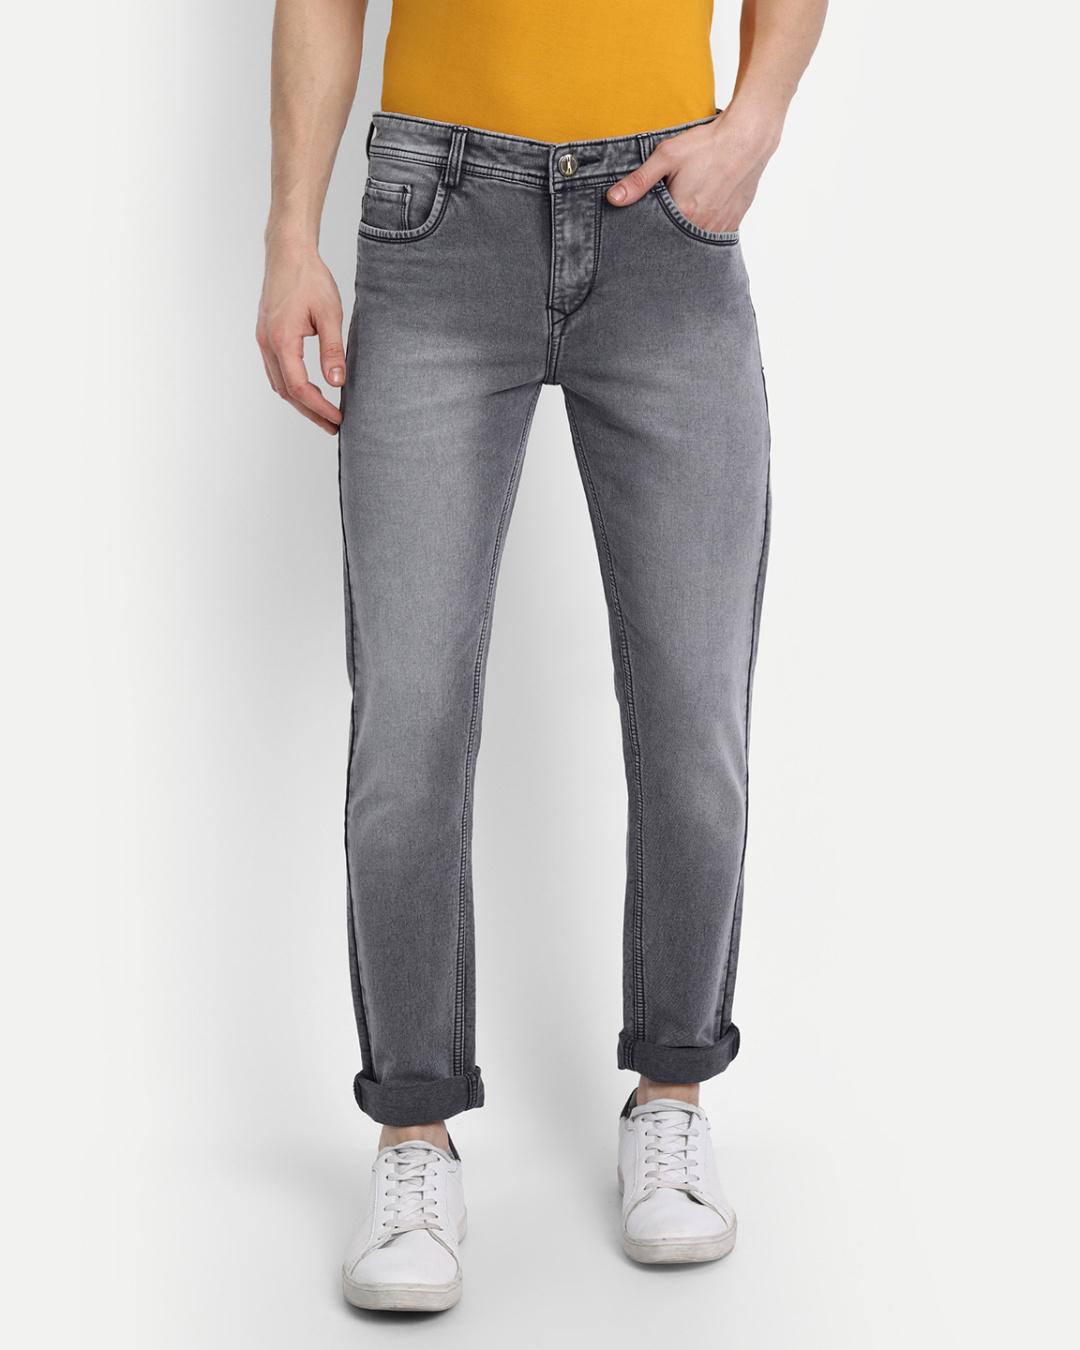 Buy Mens Grey Solid Slim Fit Denim Jeans For Men Grey Online At Bewakoof